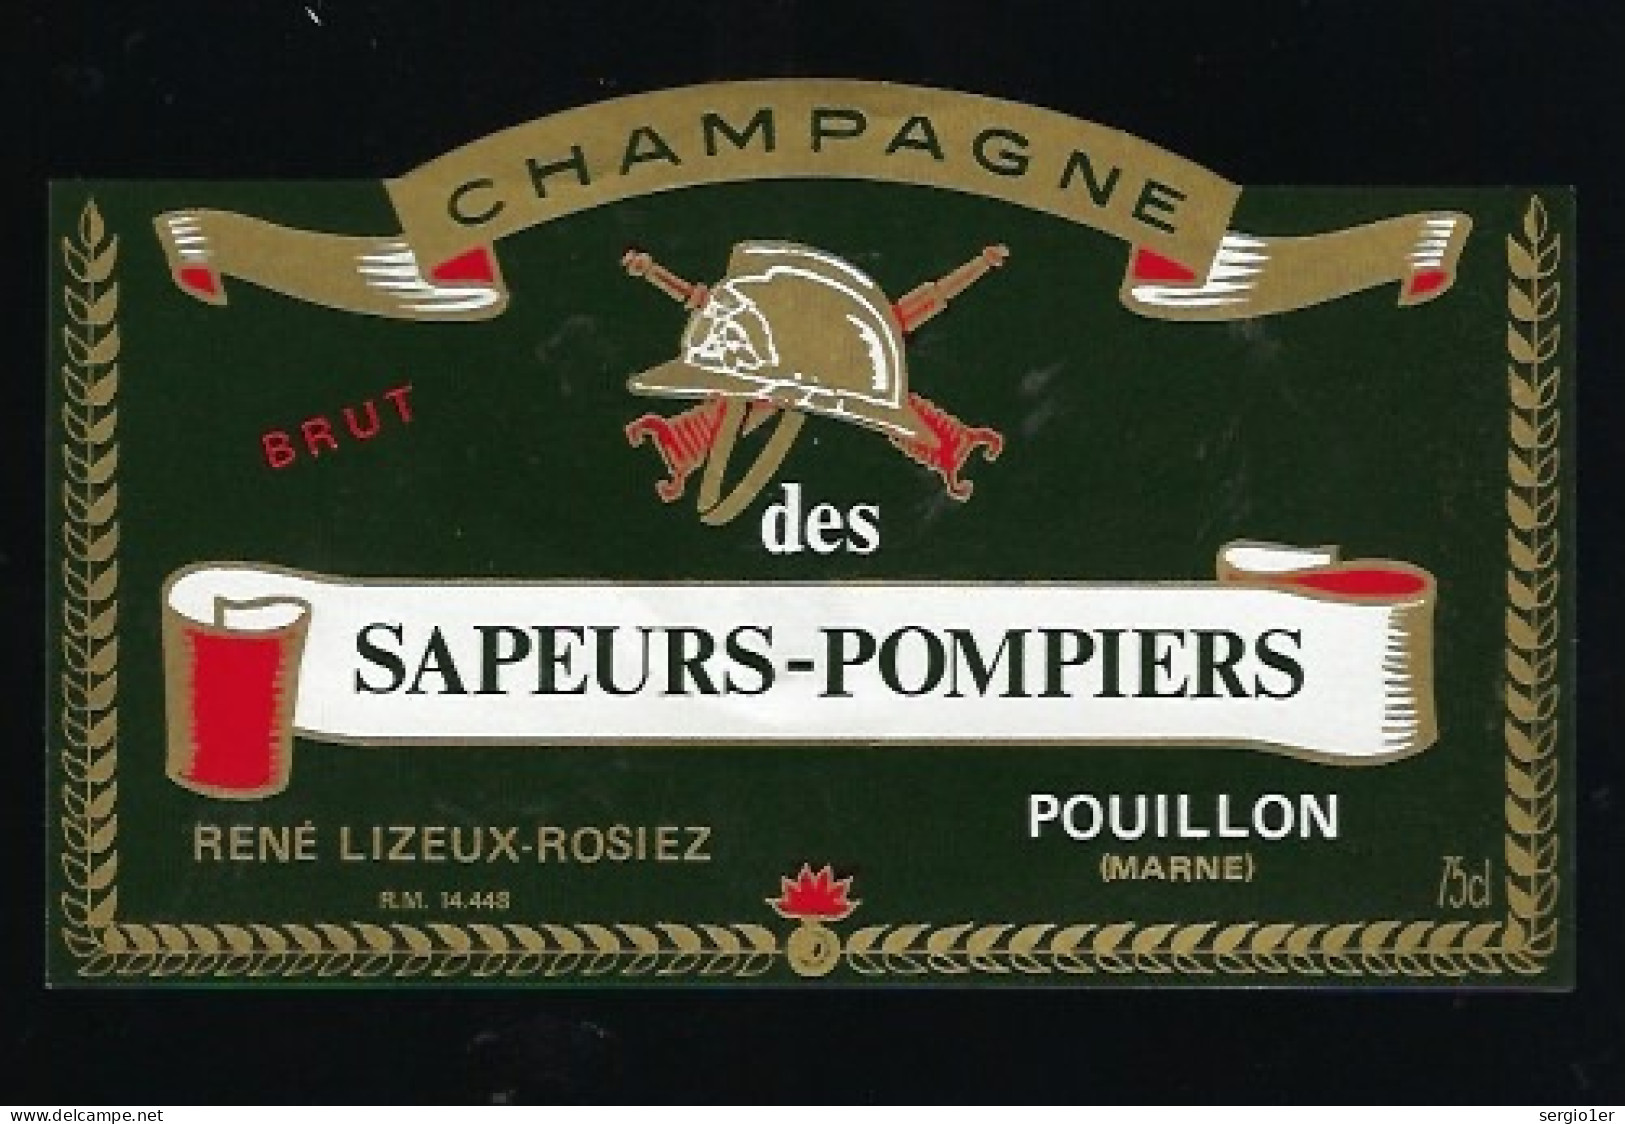 Etiquette Champagne Brut Des Sapeurs Pompiers René Lizeux Rosiez  Pouillon Marne 51 - Champagner